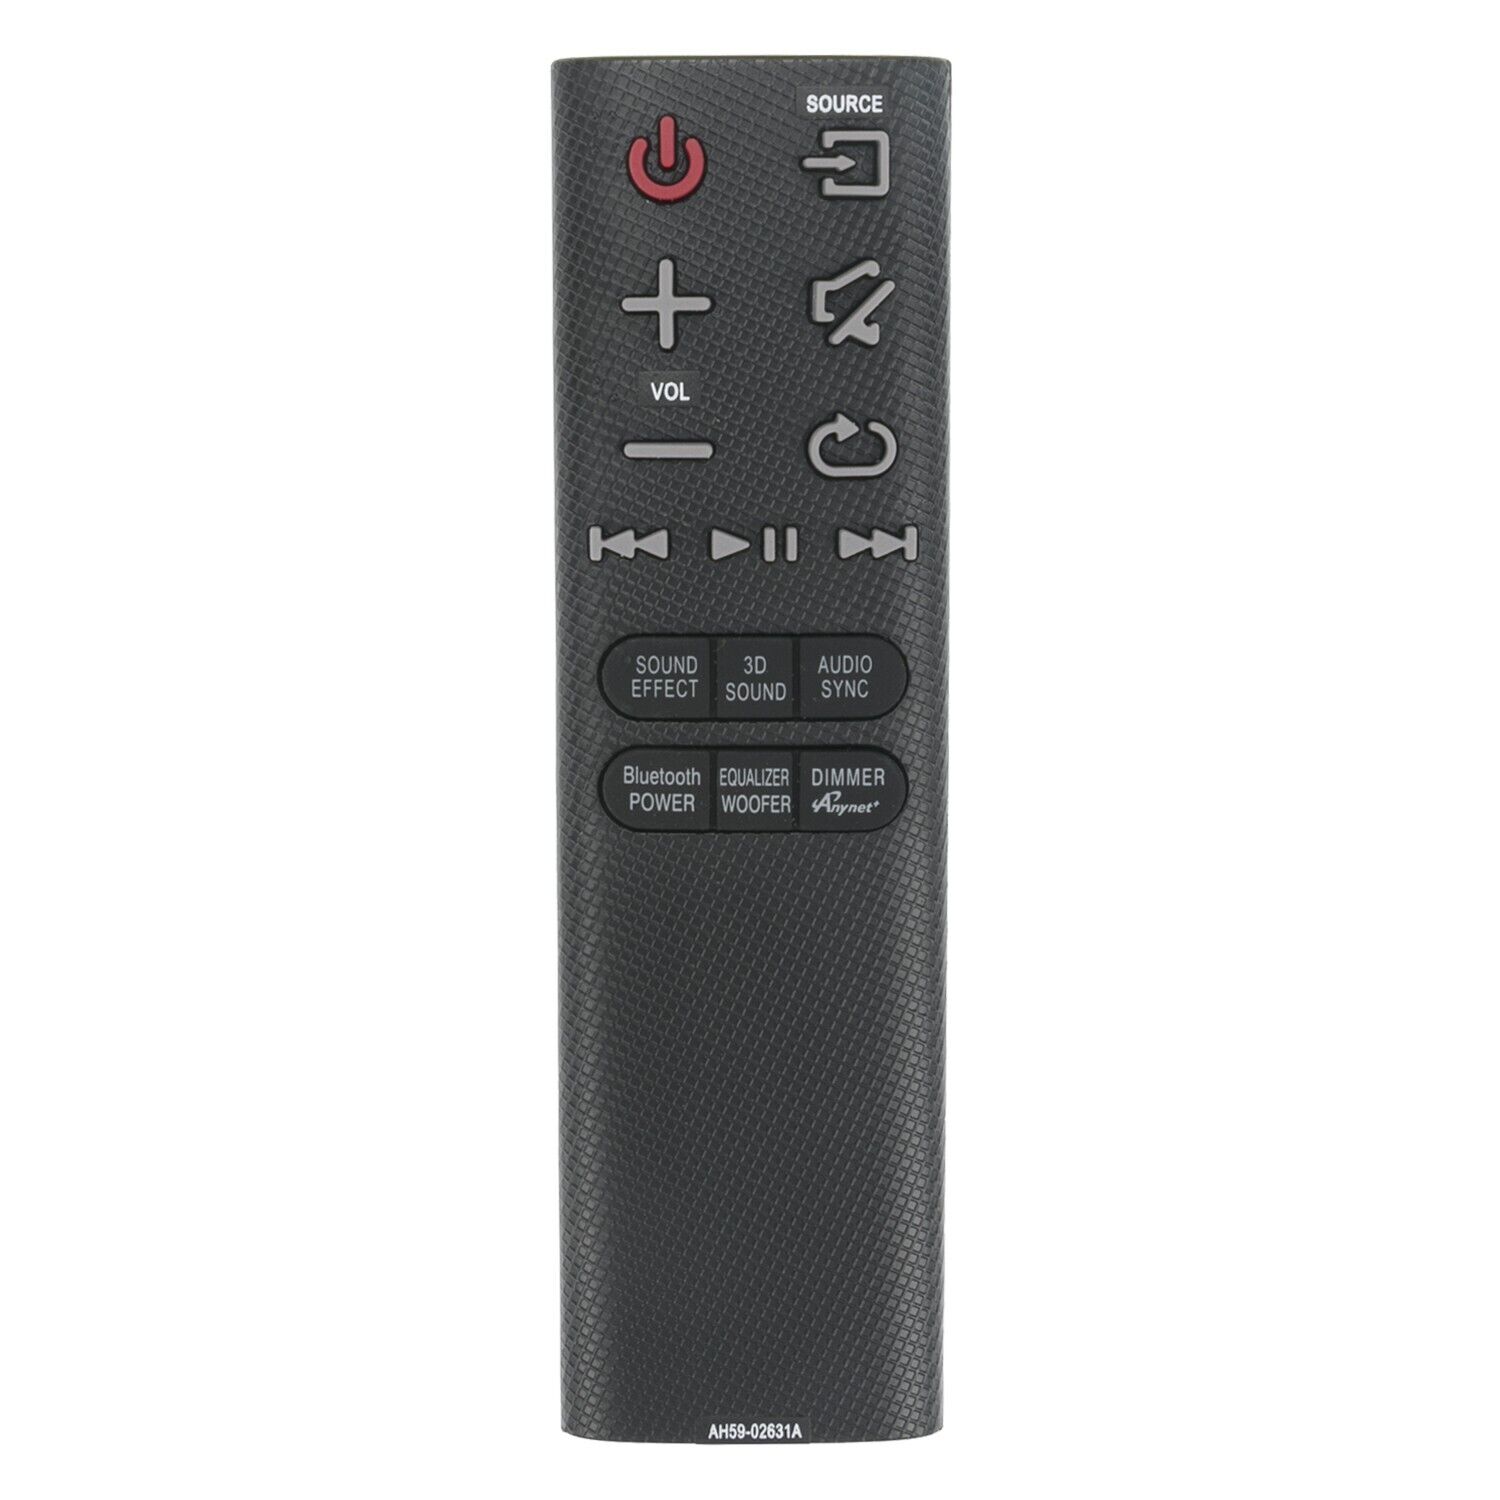 AH59-02631A Remote Control for Samsung SoundBar HW-H450 HW-HM45 HW-HM45C